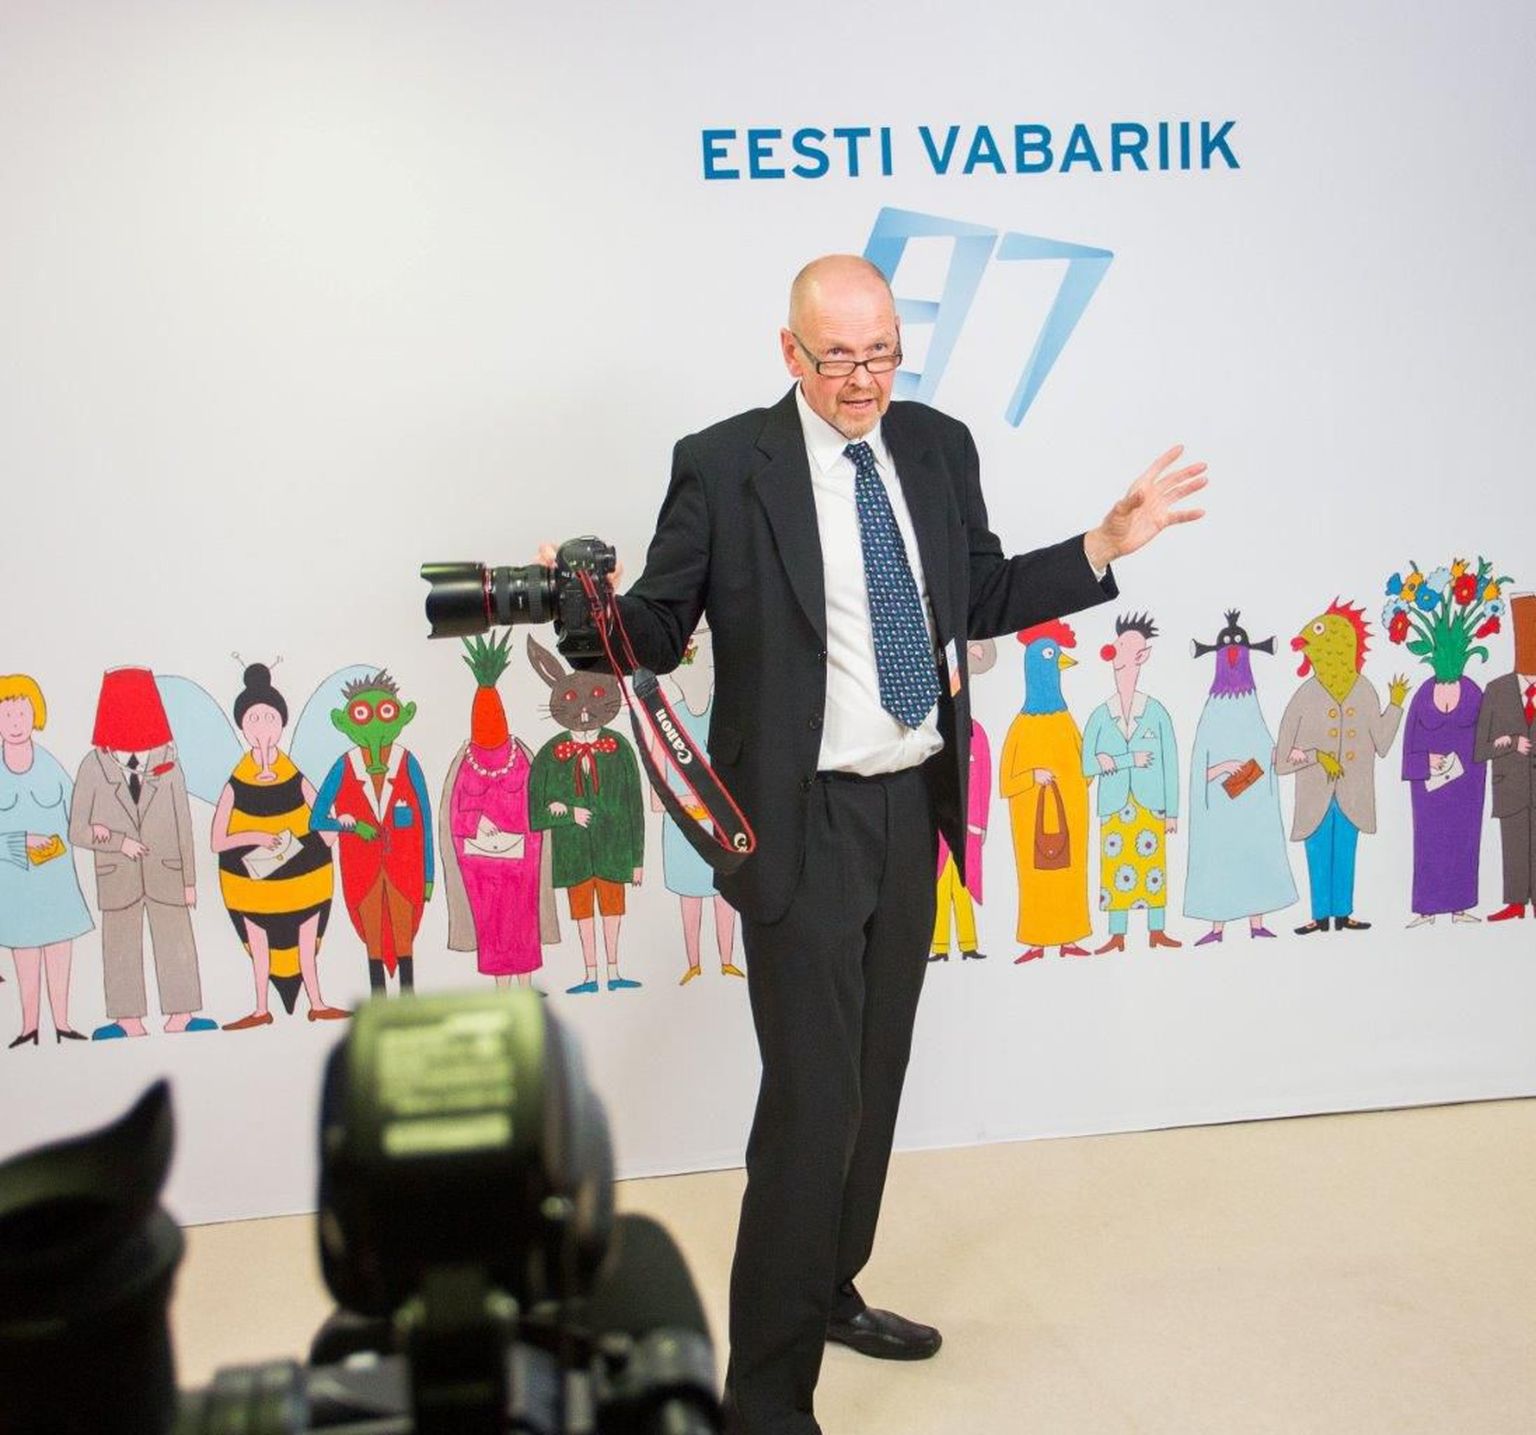 Eesti vabariigi presidendi Toomas Hendrik Ilvese vastuvõtt Jõhvi kontserdimajas.